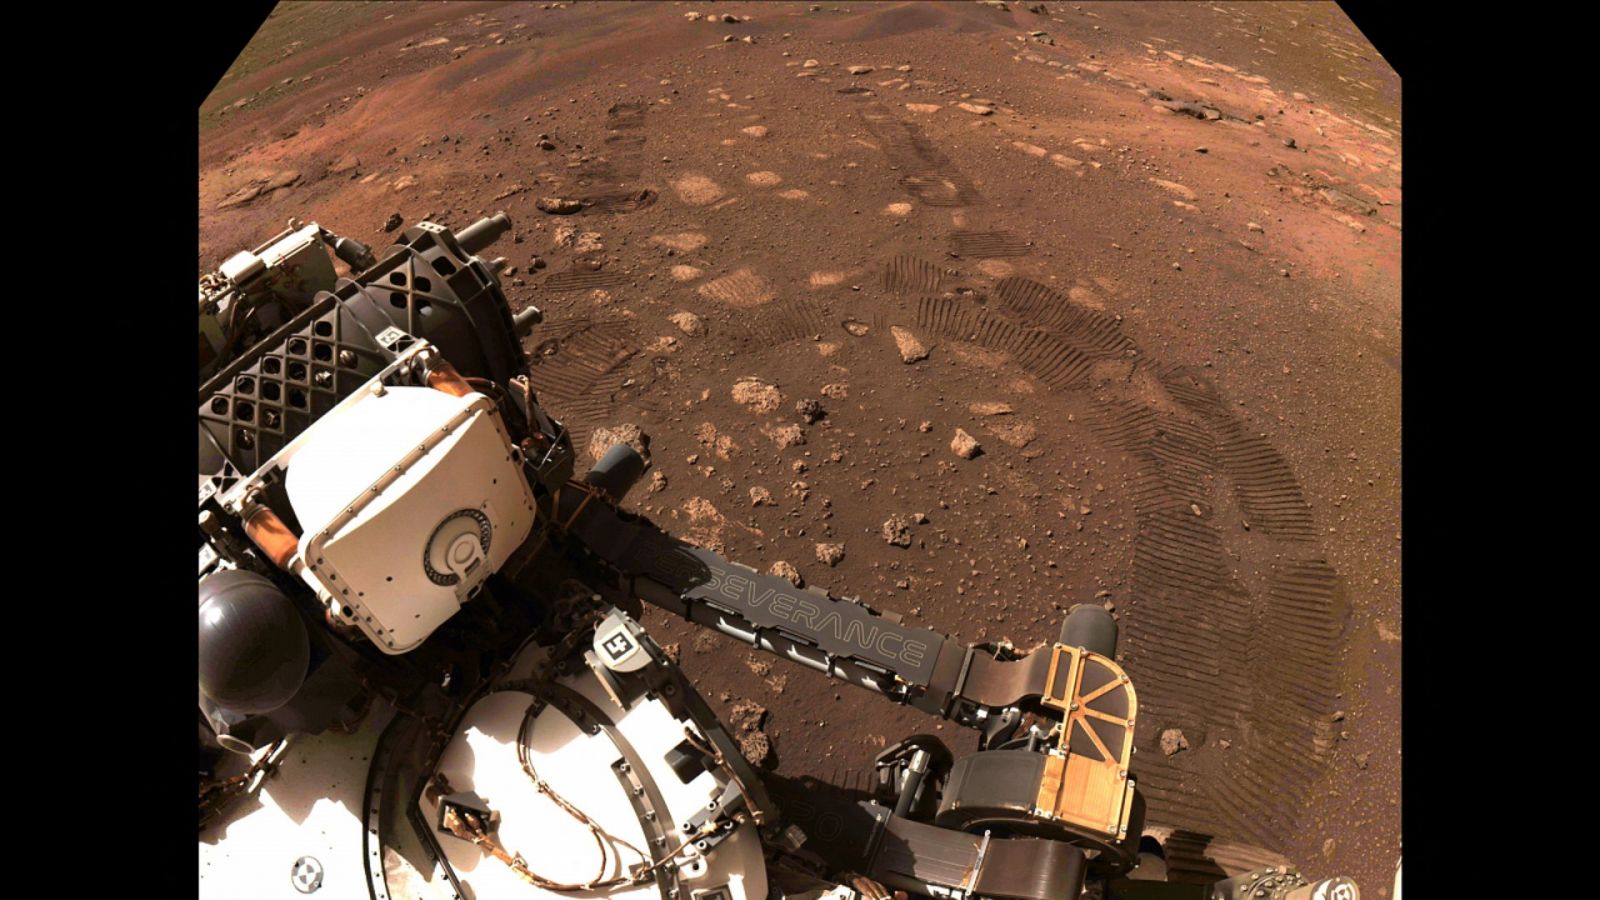 Imagen publicada por la NASA del rover Perseverance recorriendo sus primeros metros en la superficie de Marte el 4 de marzo de 2021.